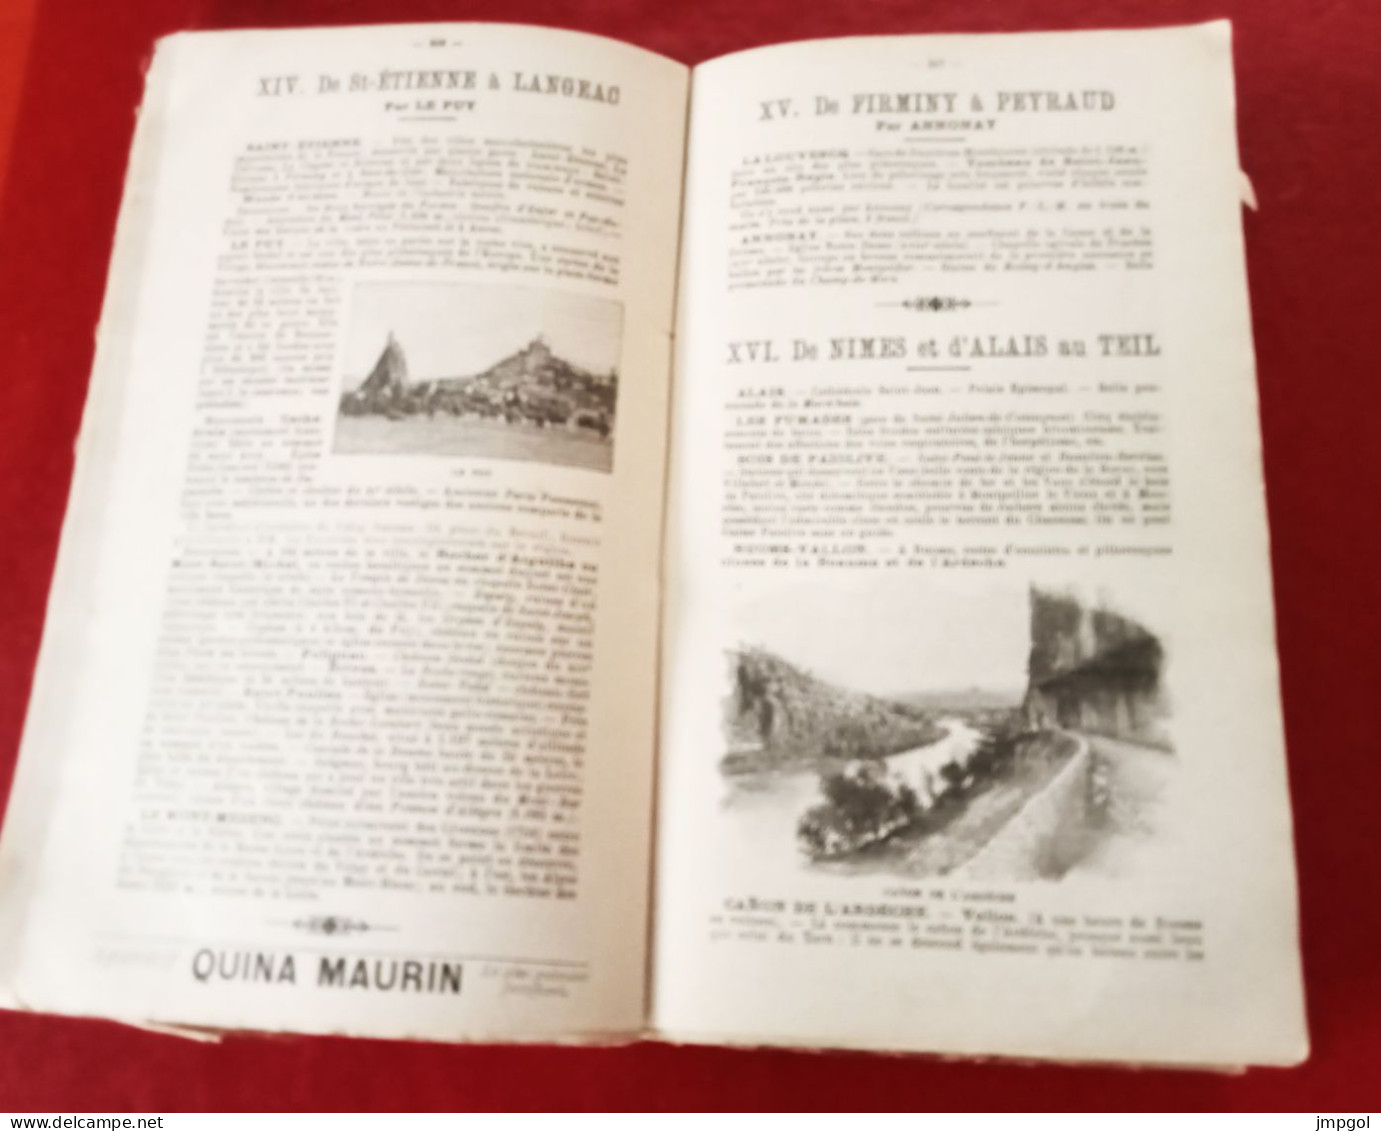 Chemins de Fer Paris Lyon Méditerranée Livret Guide Officiel Service d'Eté 1900 Horaires Voyages Circulaires Excursions